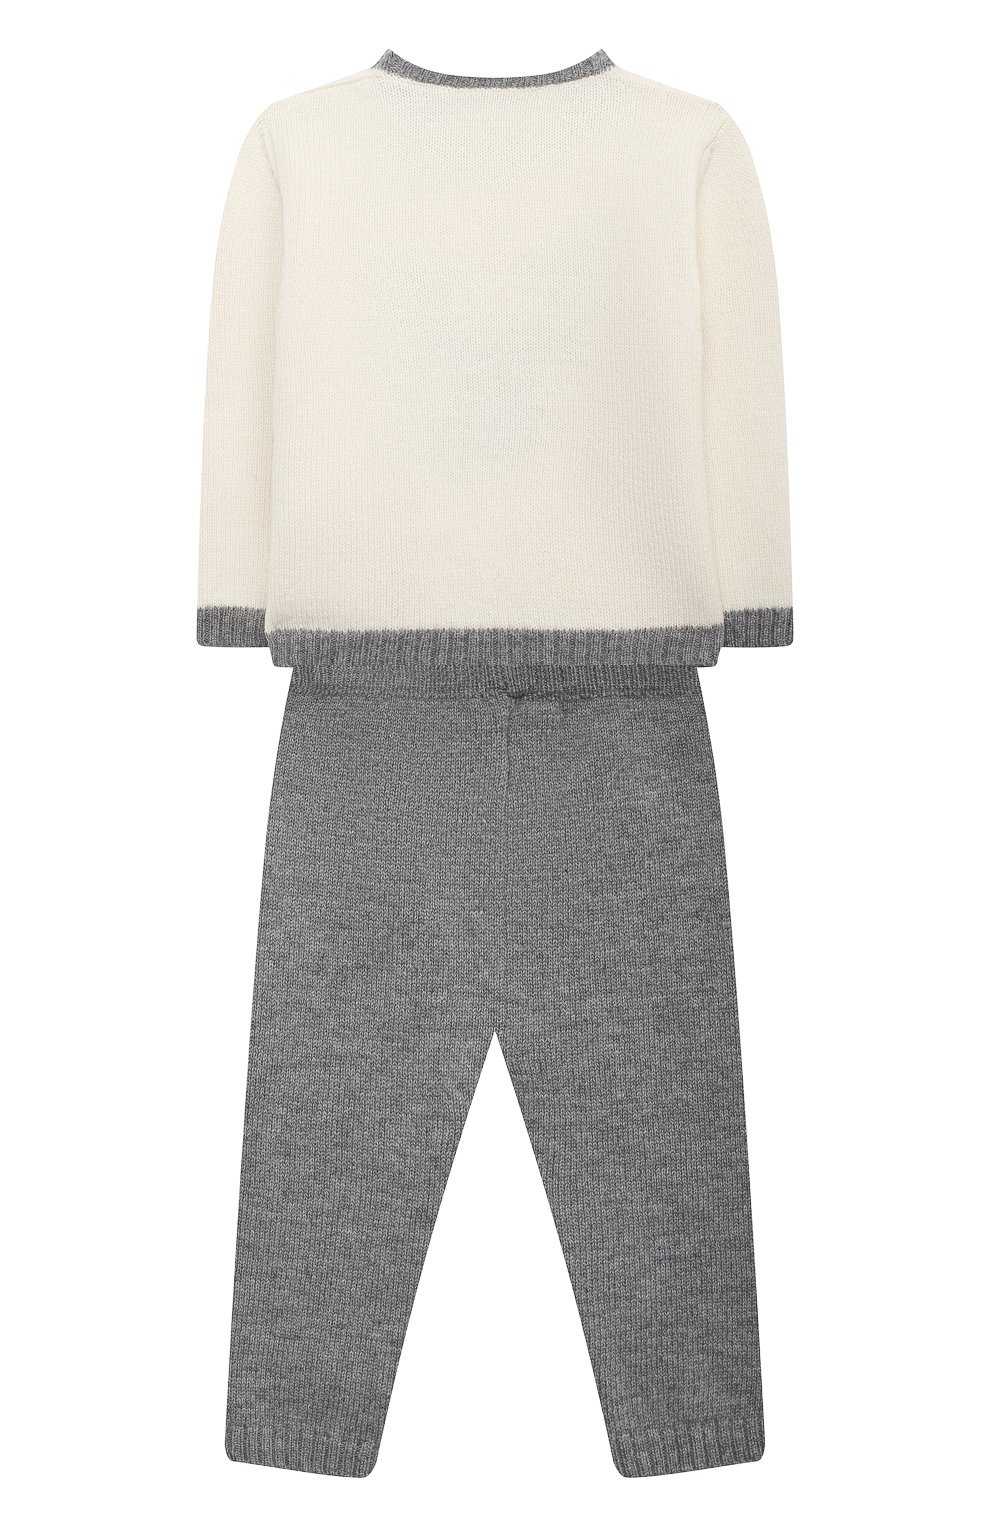 Детский комплект из пуловера и брюк BABY T серого цвета, арт. 20AI070C/18M-3A | Фото 2 (Кросс-КТ НВ: Костюм)